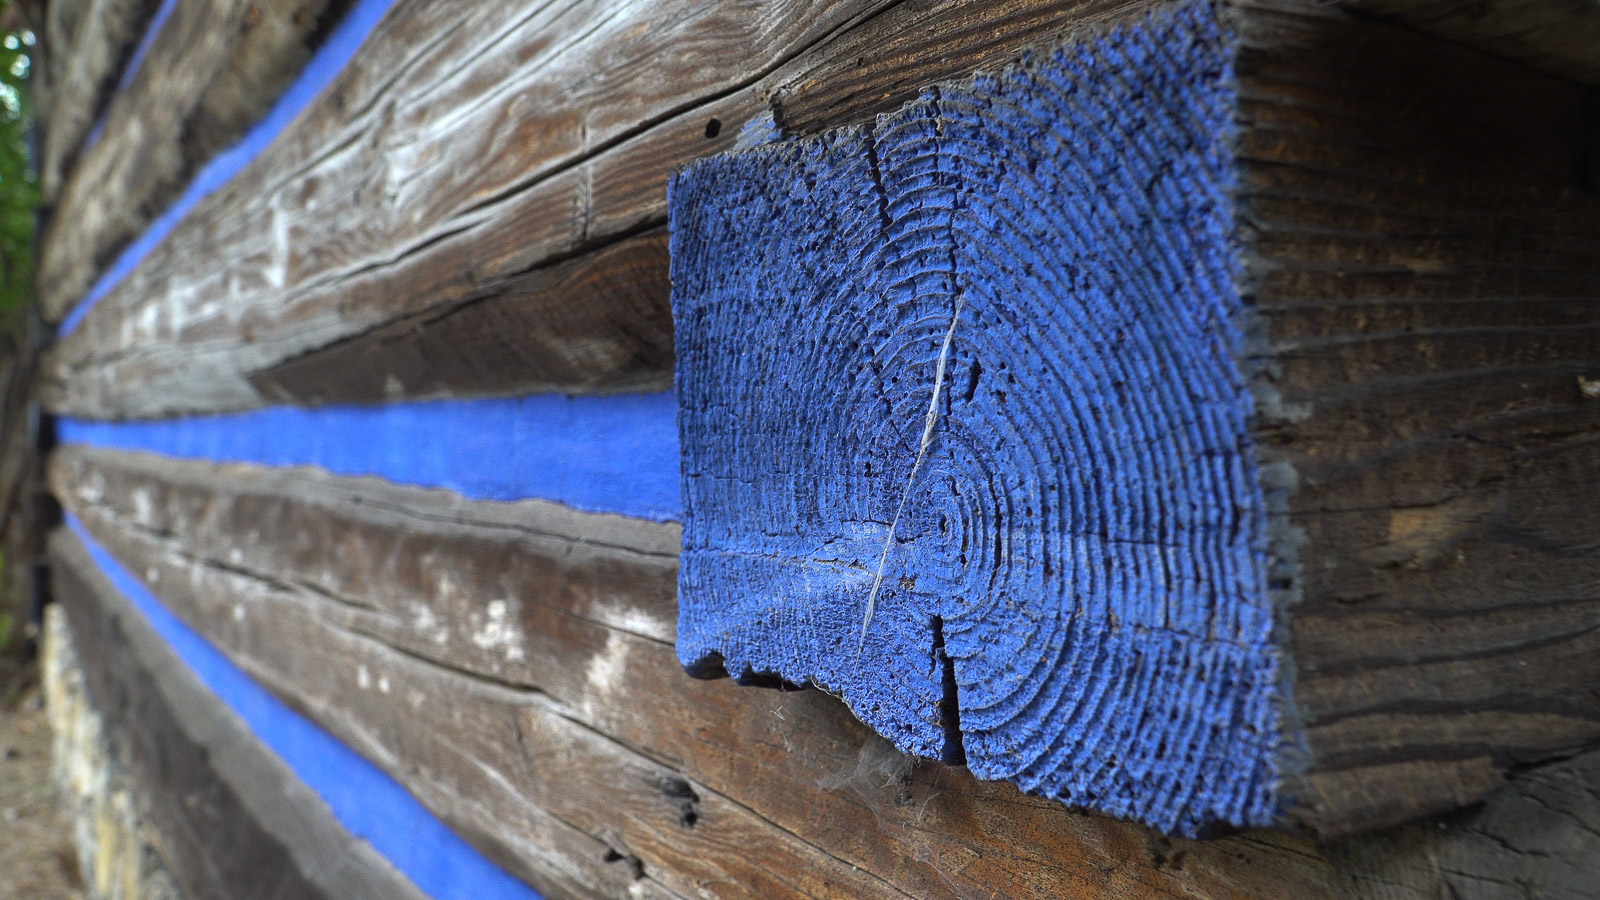 zewnętrzna ściana domu drewnianego malowana w niebieskie pasy